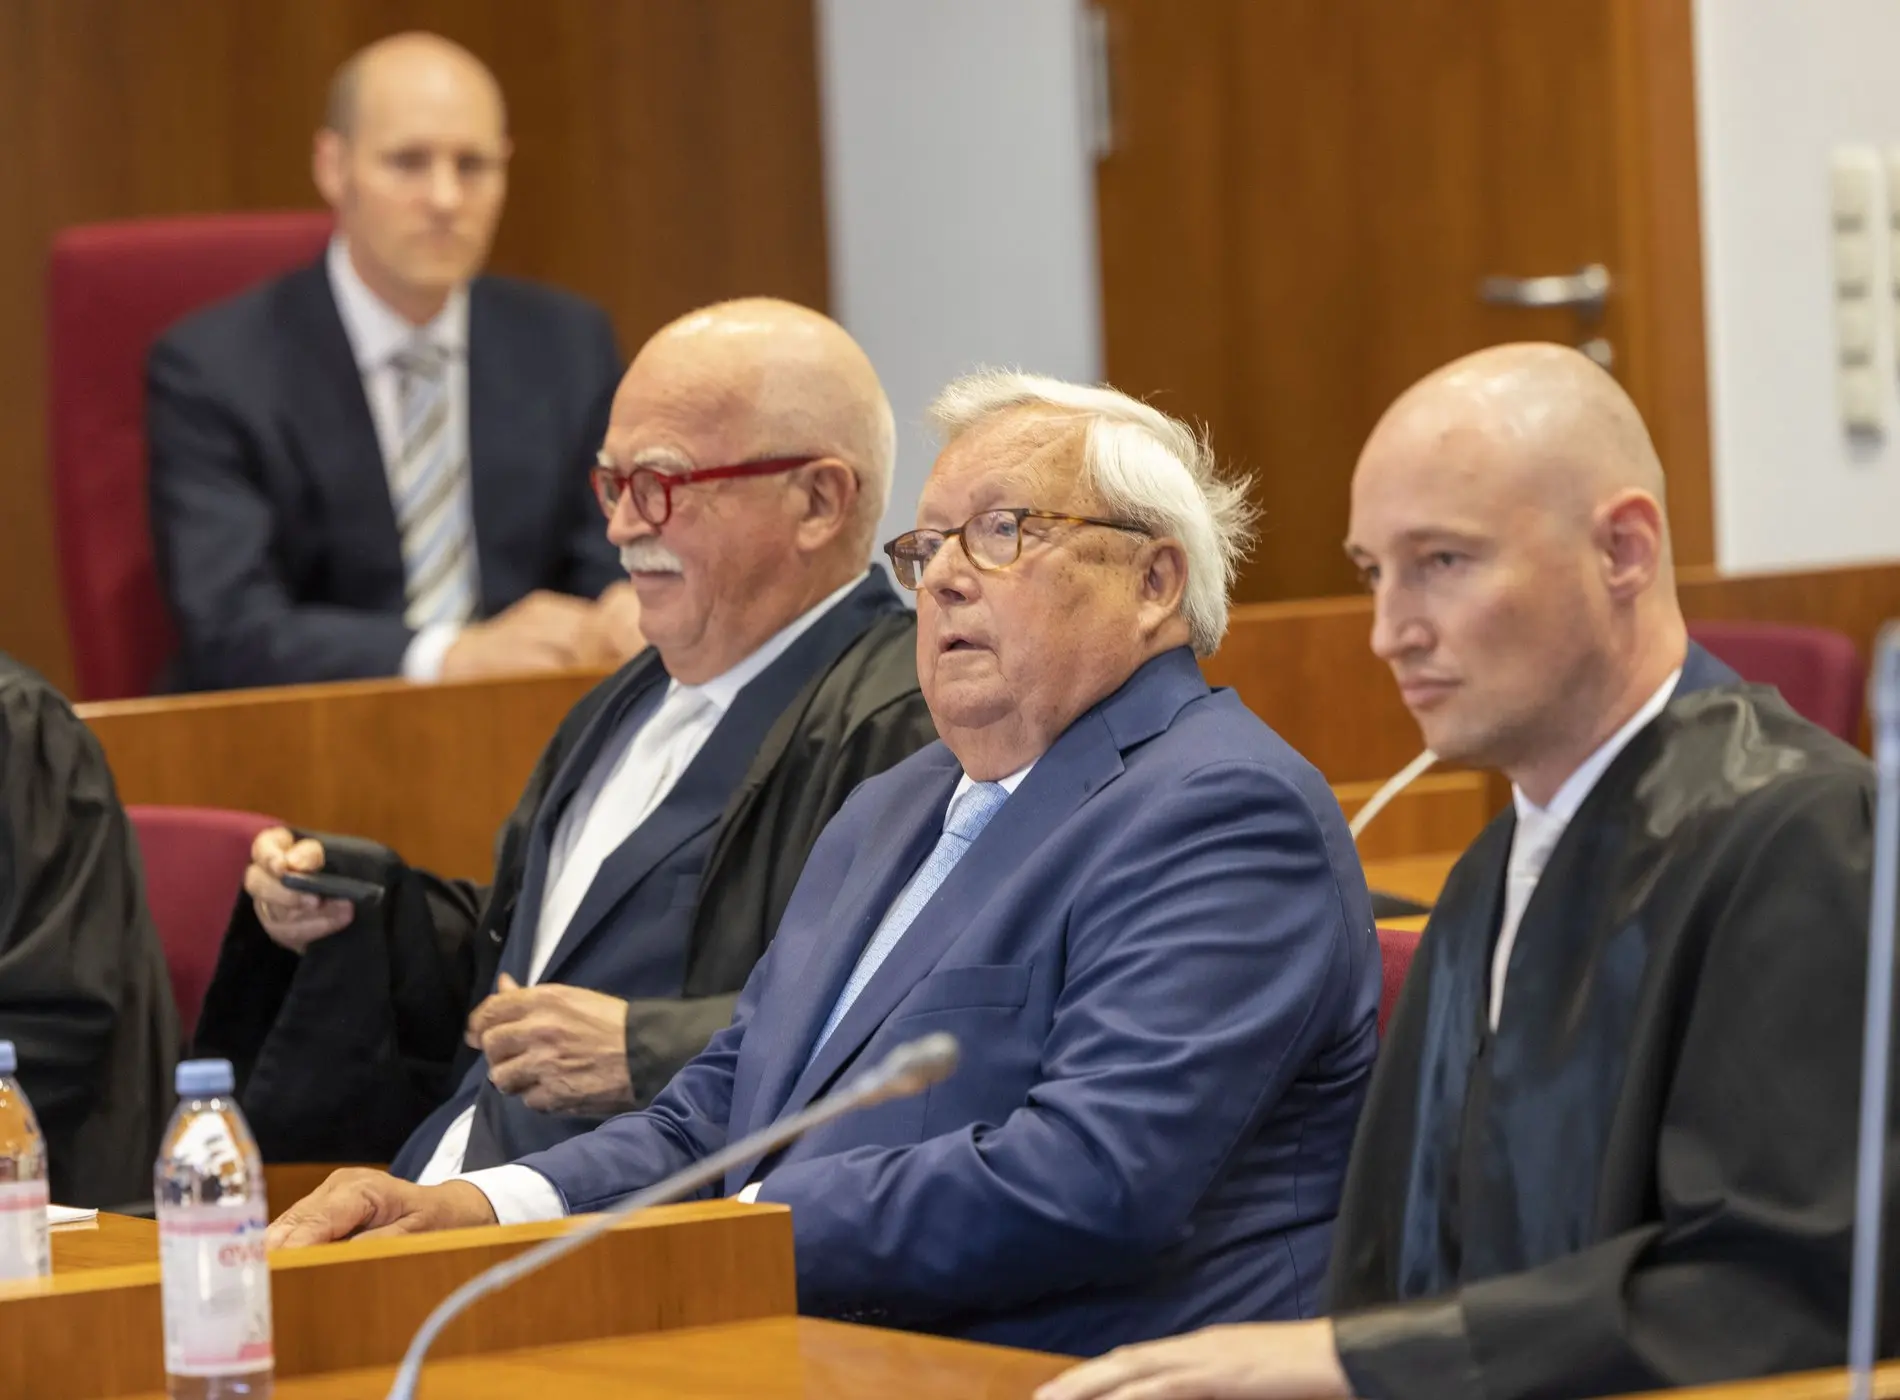 Das Bild zeigt Bankier Christian Olearius zwischen seinen Anwälten im Gerichtssaal.